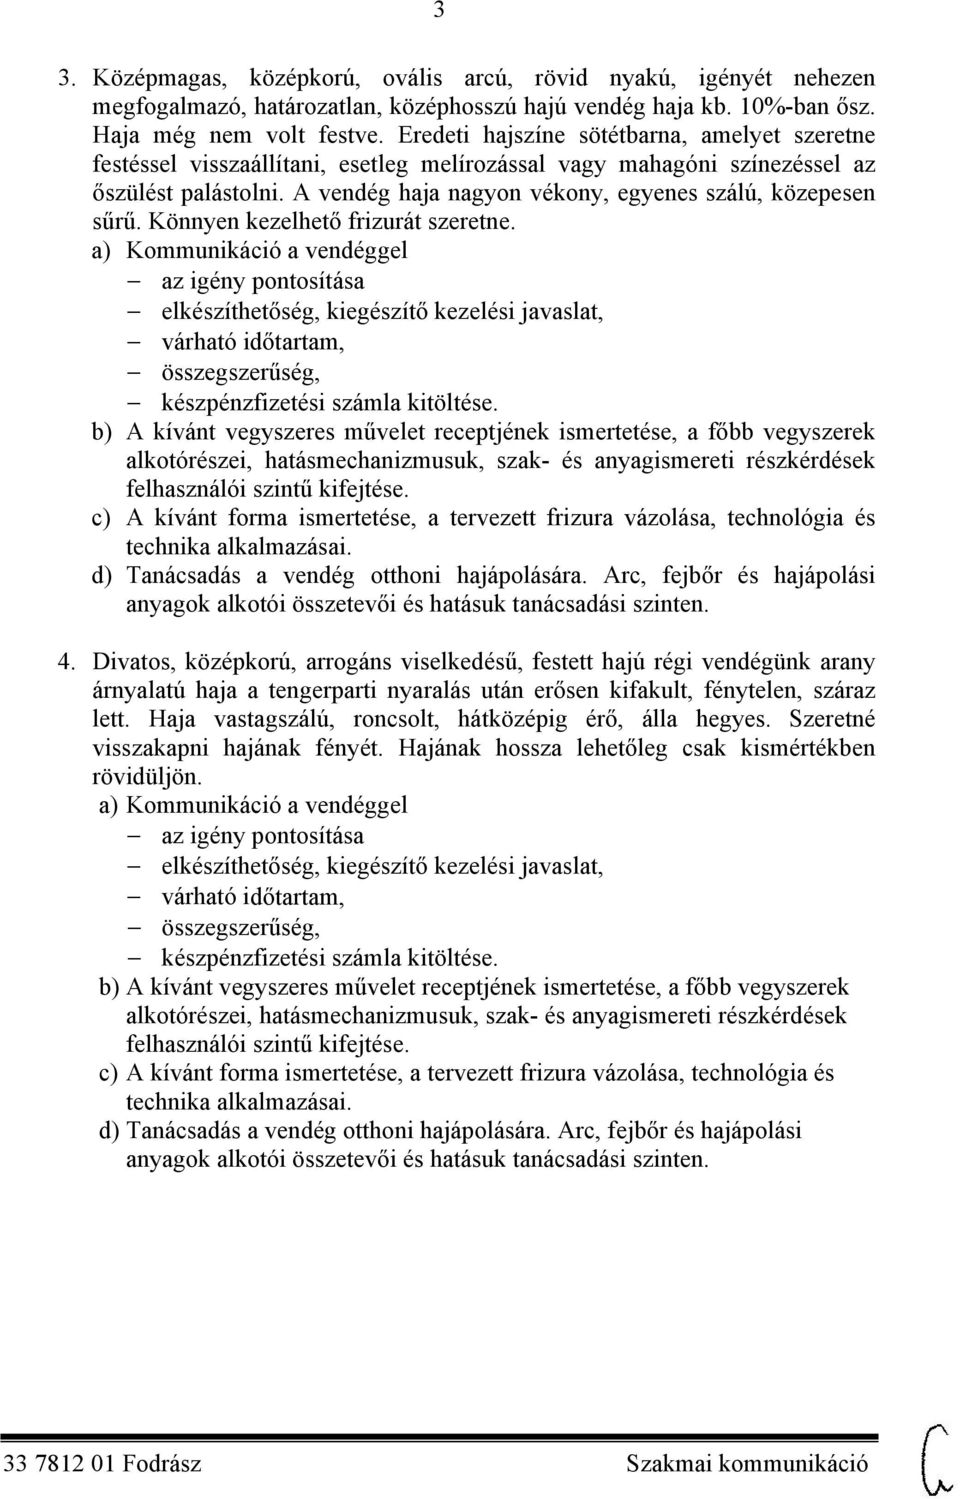 Fodrász Szakmai kommunikáció - PDF Ingyenes letöltés